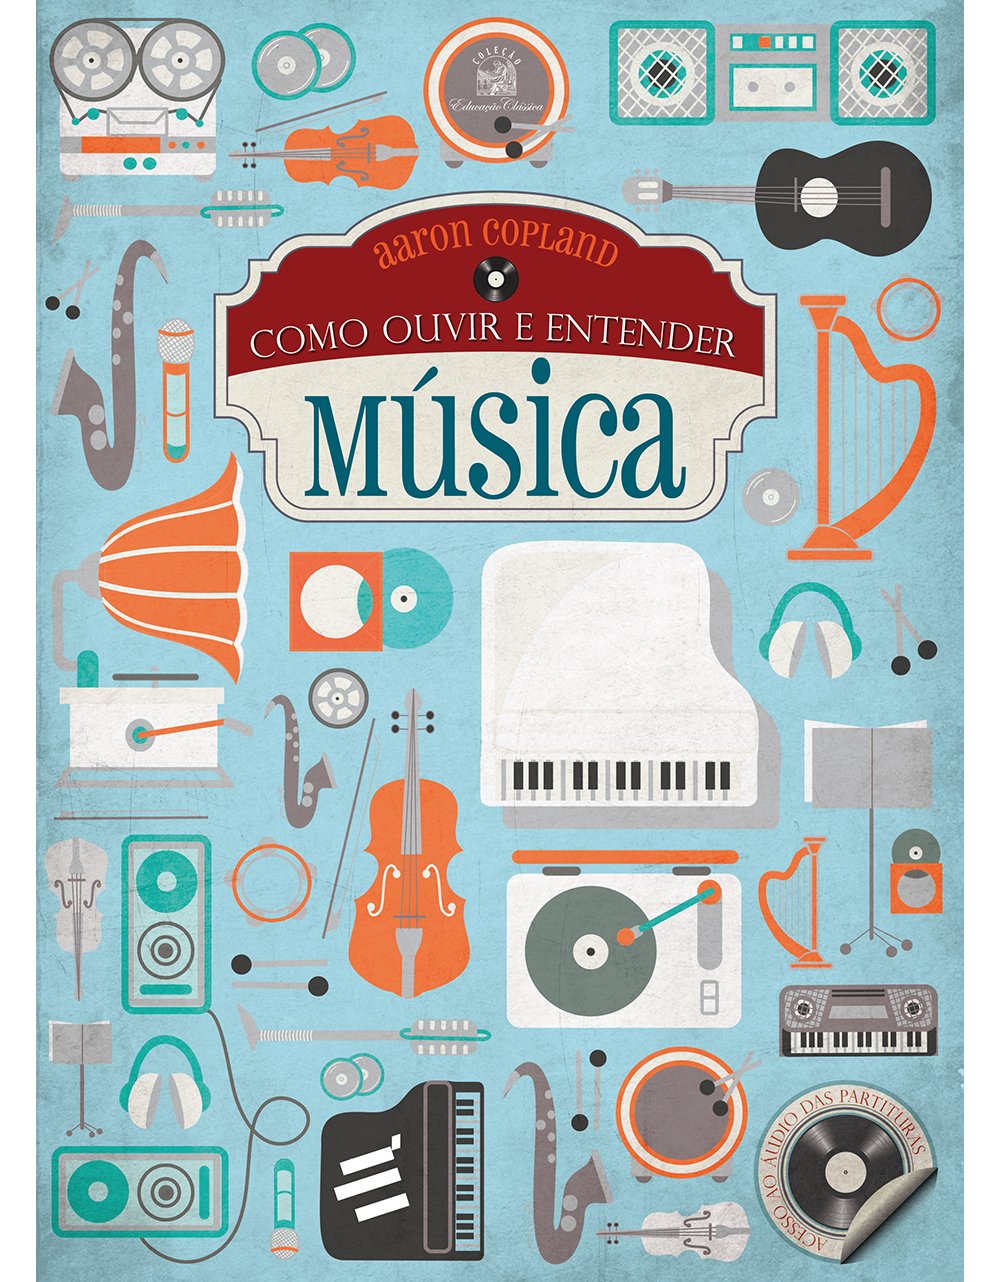 Como Ouvir e Entender Música, livro de Aaron Copland